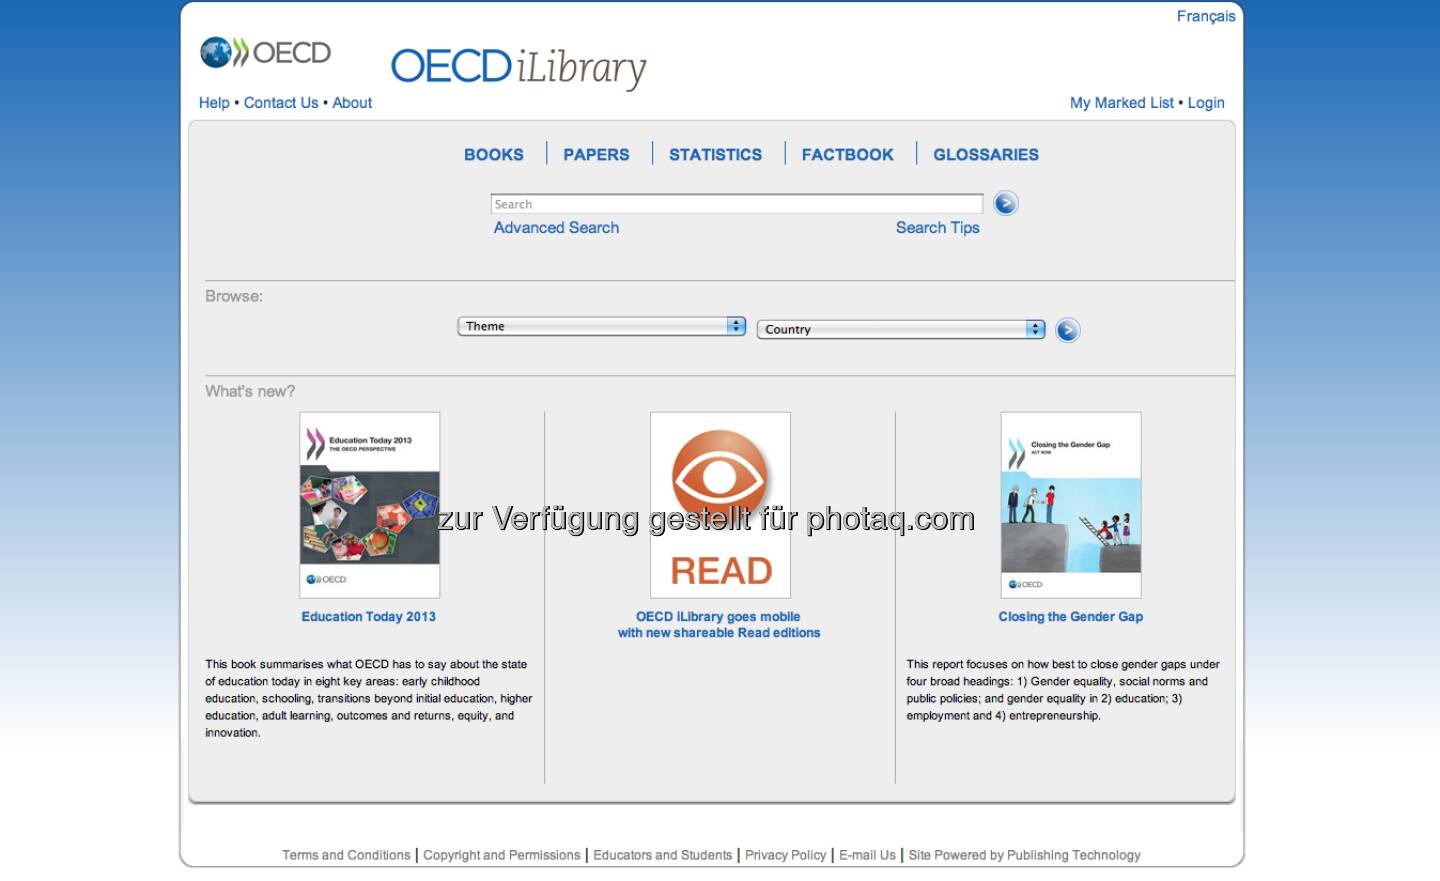 http://www.oecd-ilibrary.org/ - die OECD-Bibilothek liefert starke Inhalte und Grafiken zu den Themen Wirtschaft, Gesellschaft und Umwelt. Unter http://finanzmarktfoto.at/page/index/161gibt es eine kleine Kooperation mit finanzmarktfoto.at